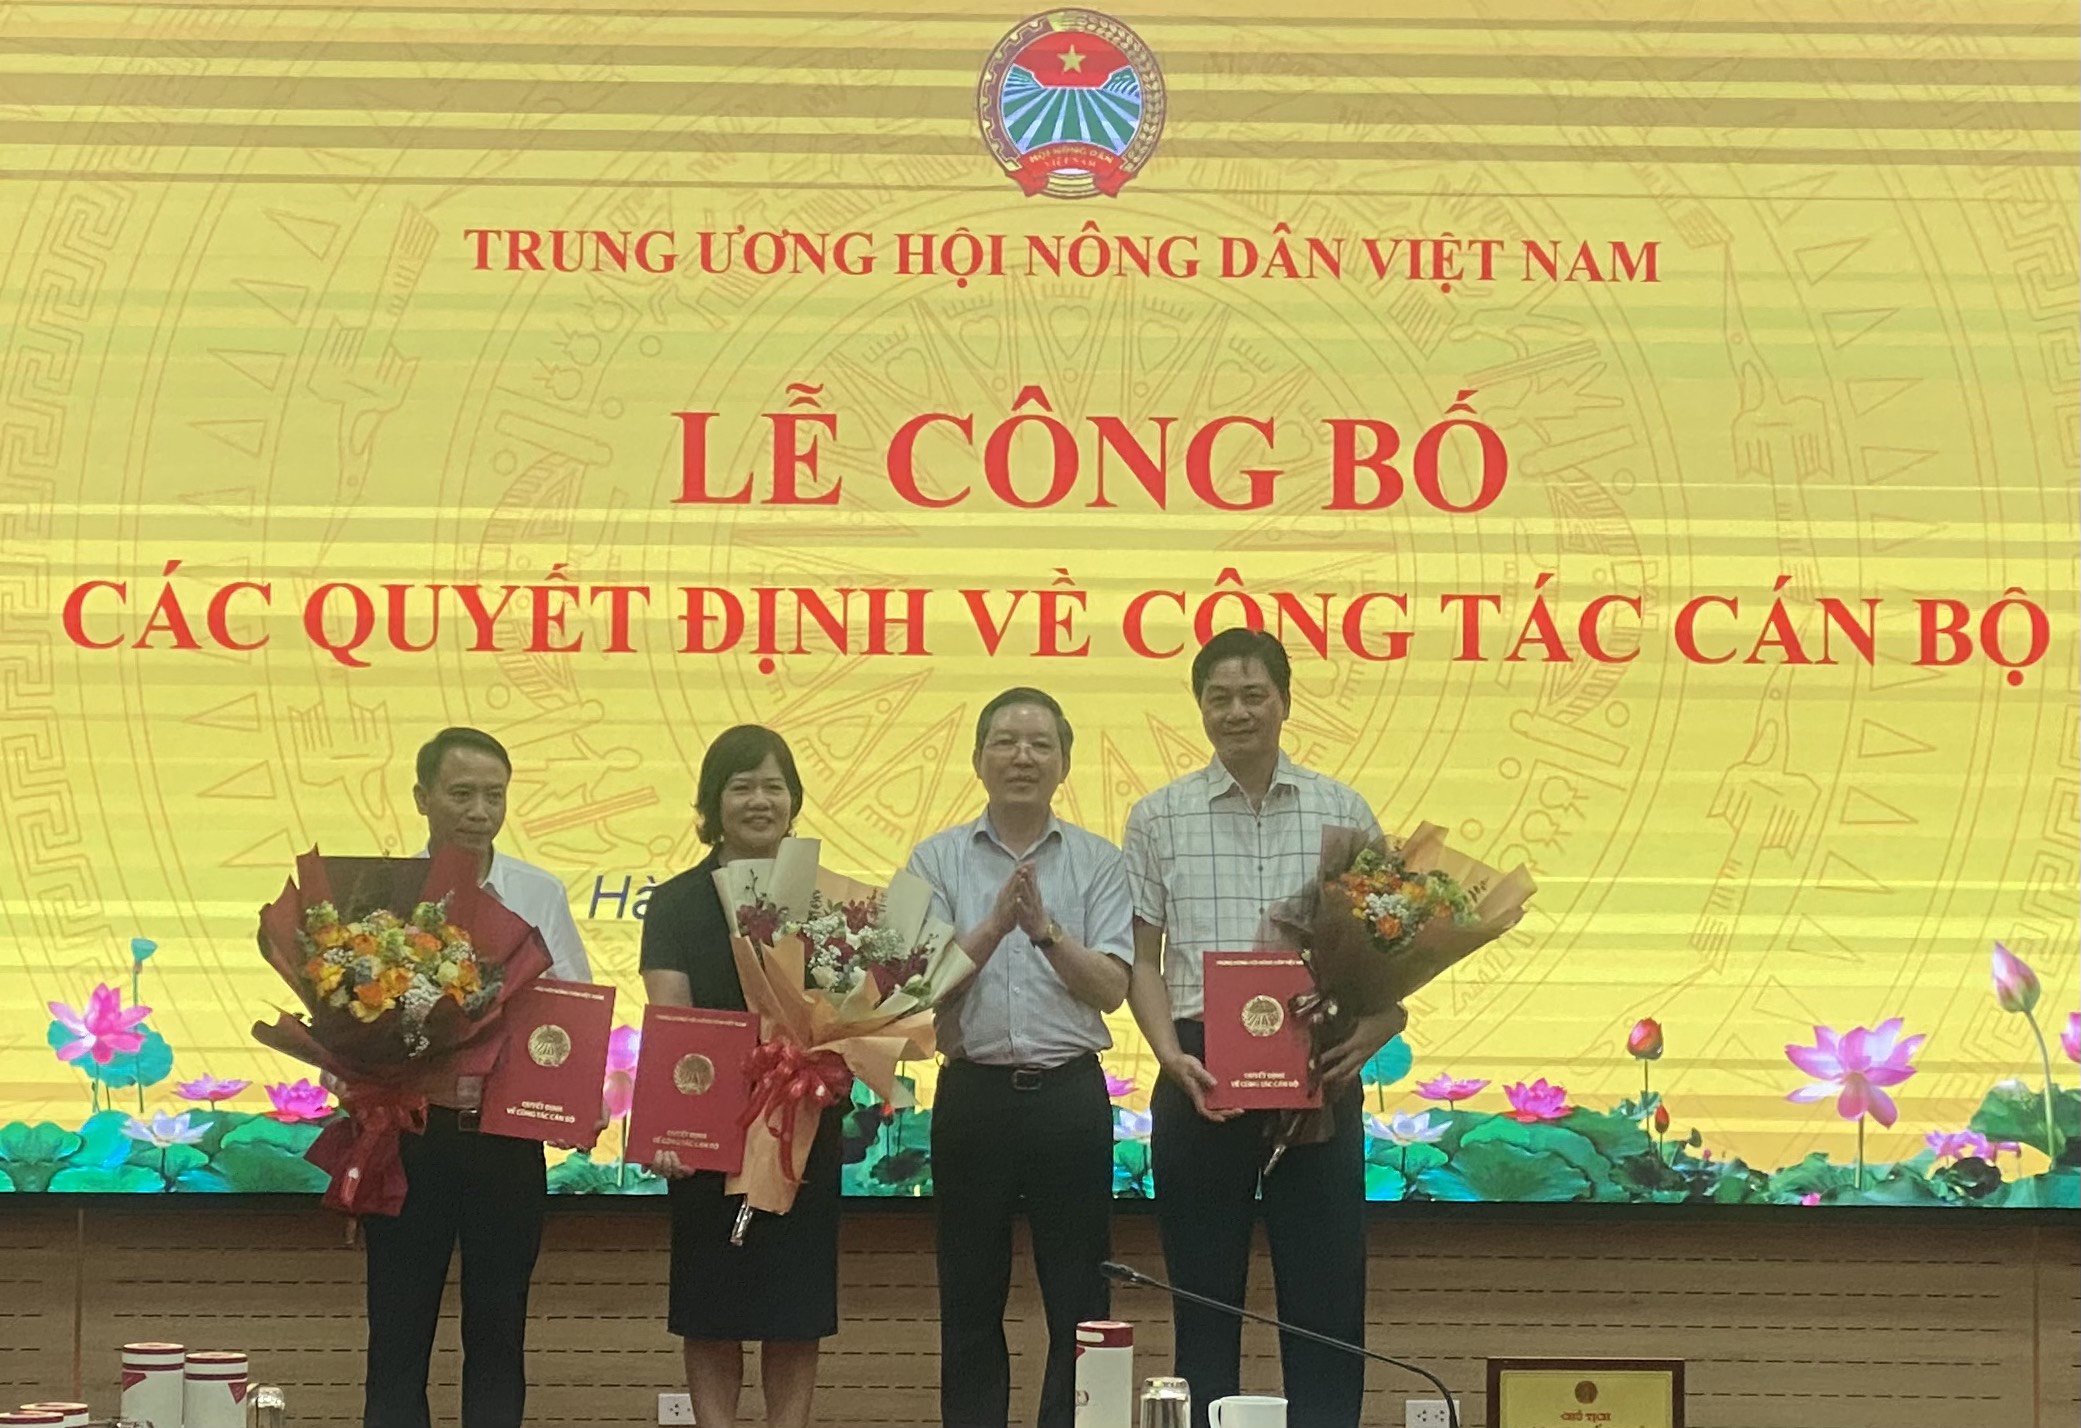 Trung ương Hội Nông dân Việt Nam: Lễ công bố các quyết định về công tác cán bộ